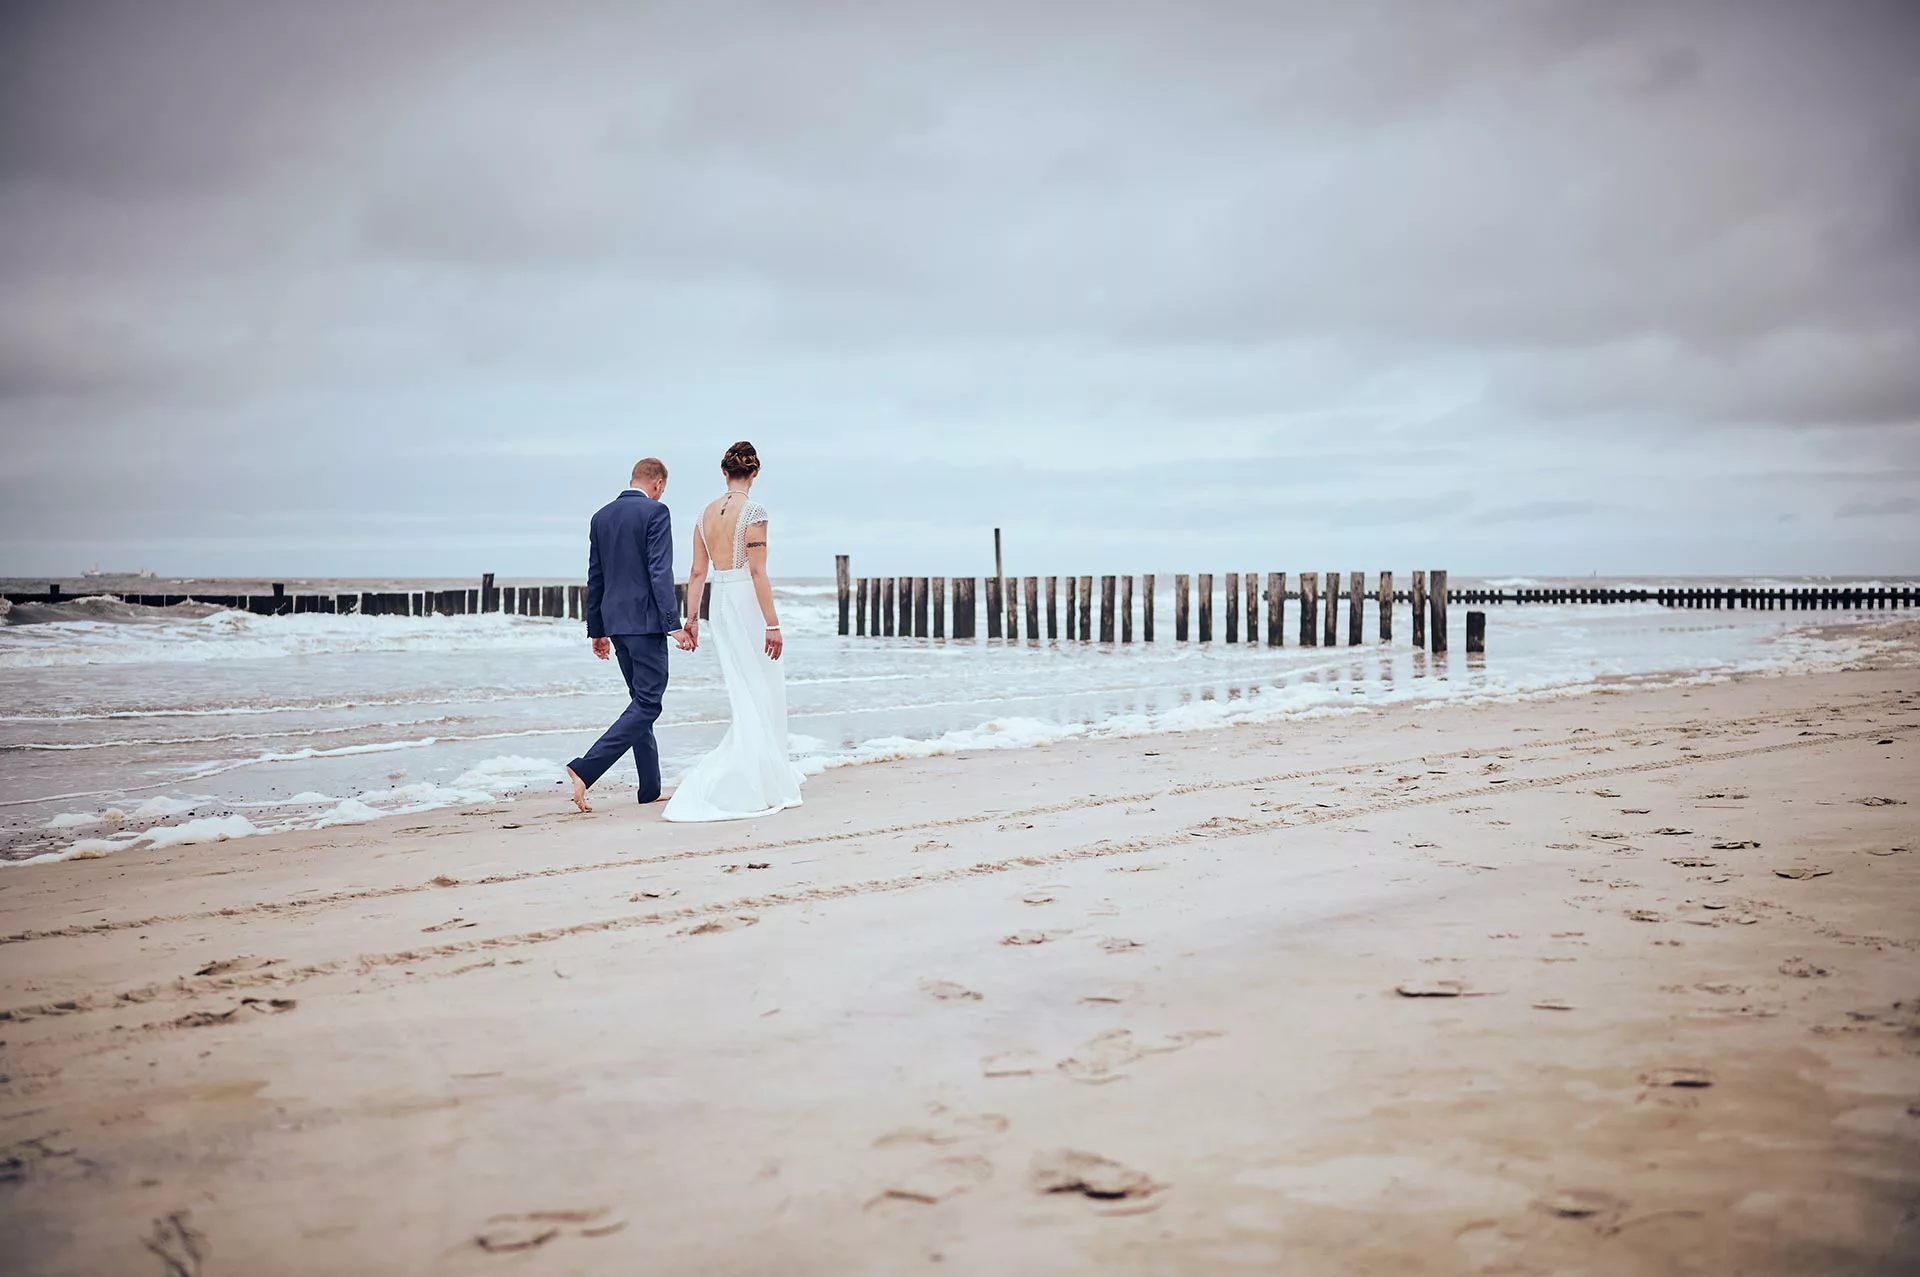 Brautpaar spaziert am Strand